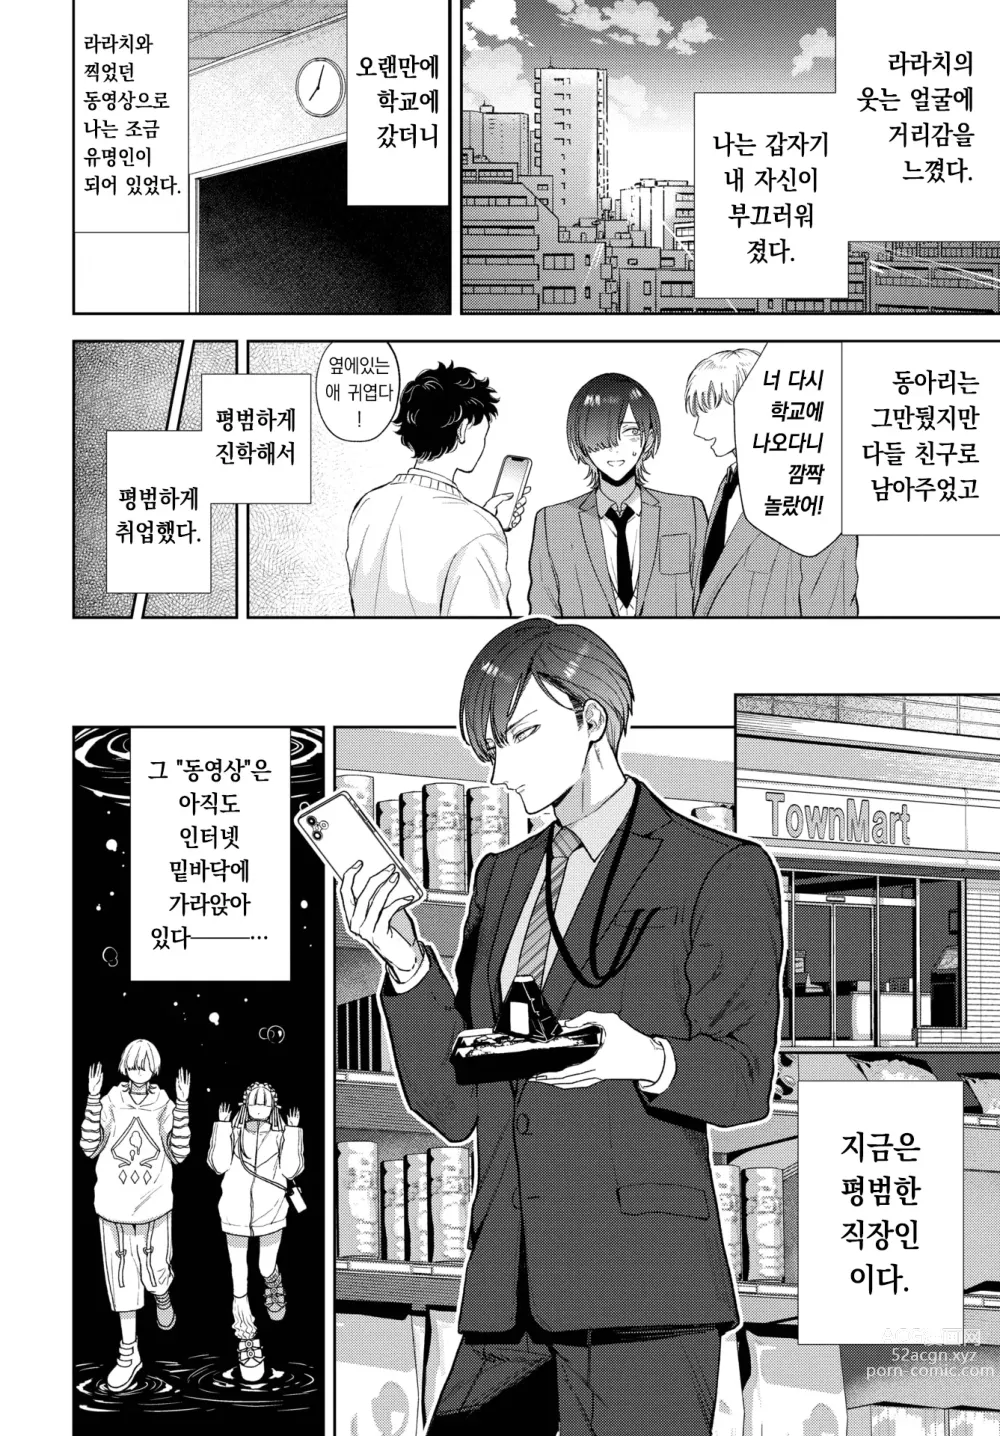 Page 29 of manga 사랑하는 라라치